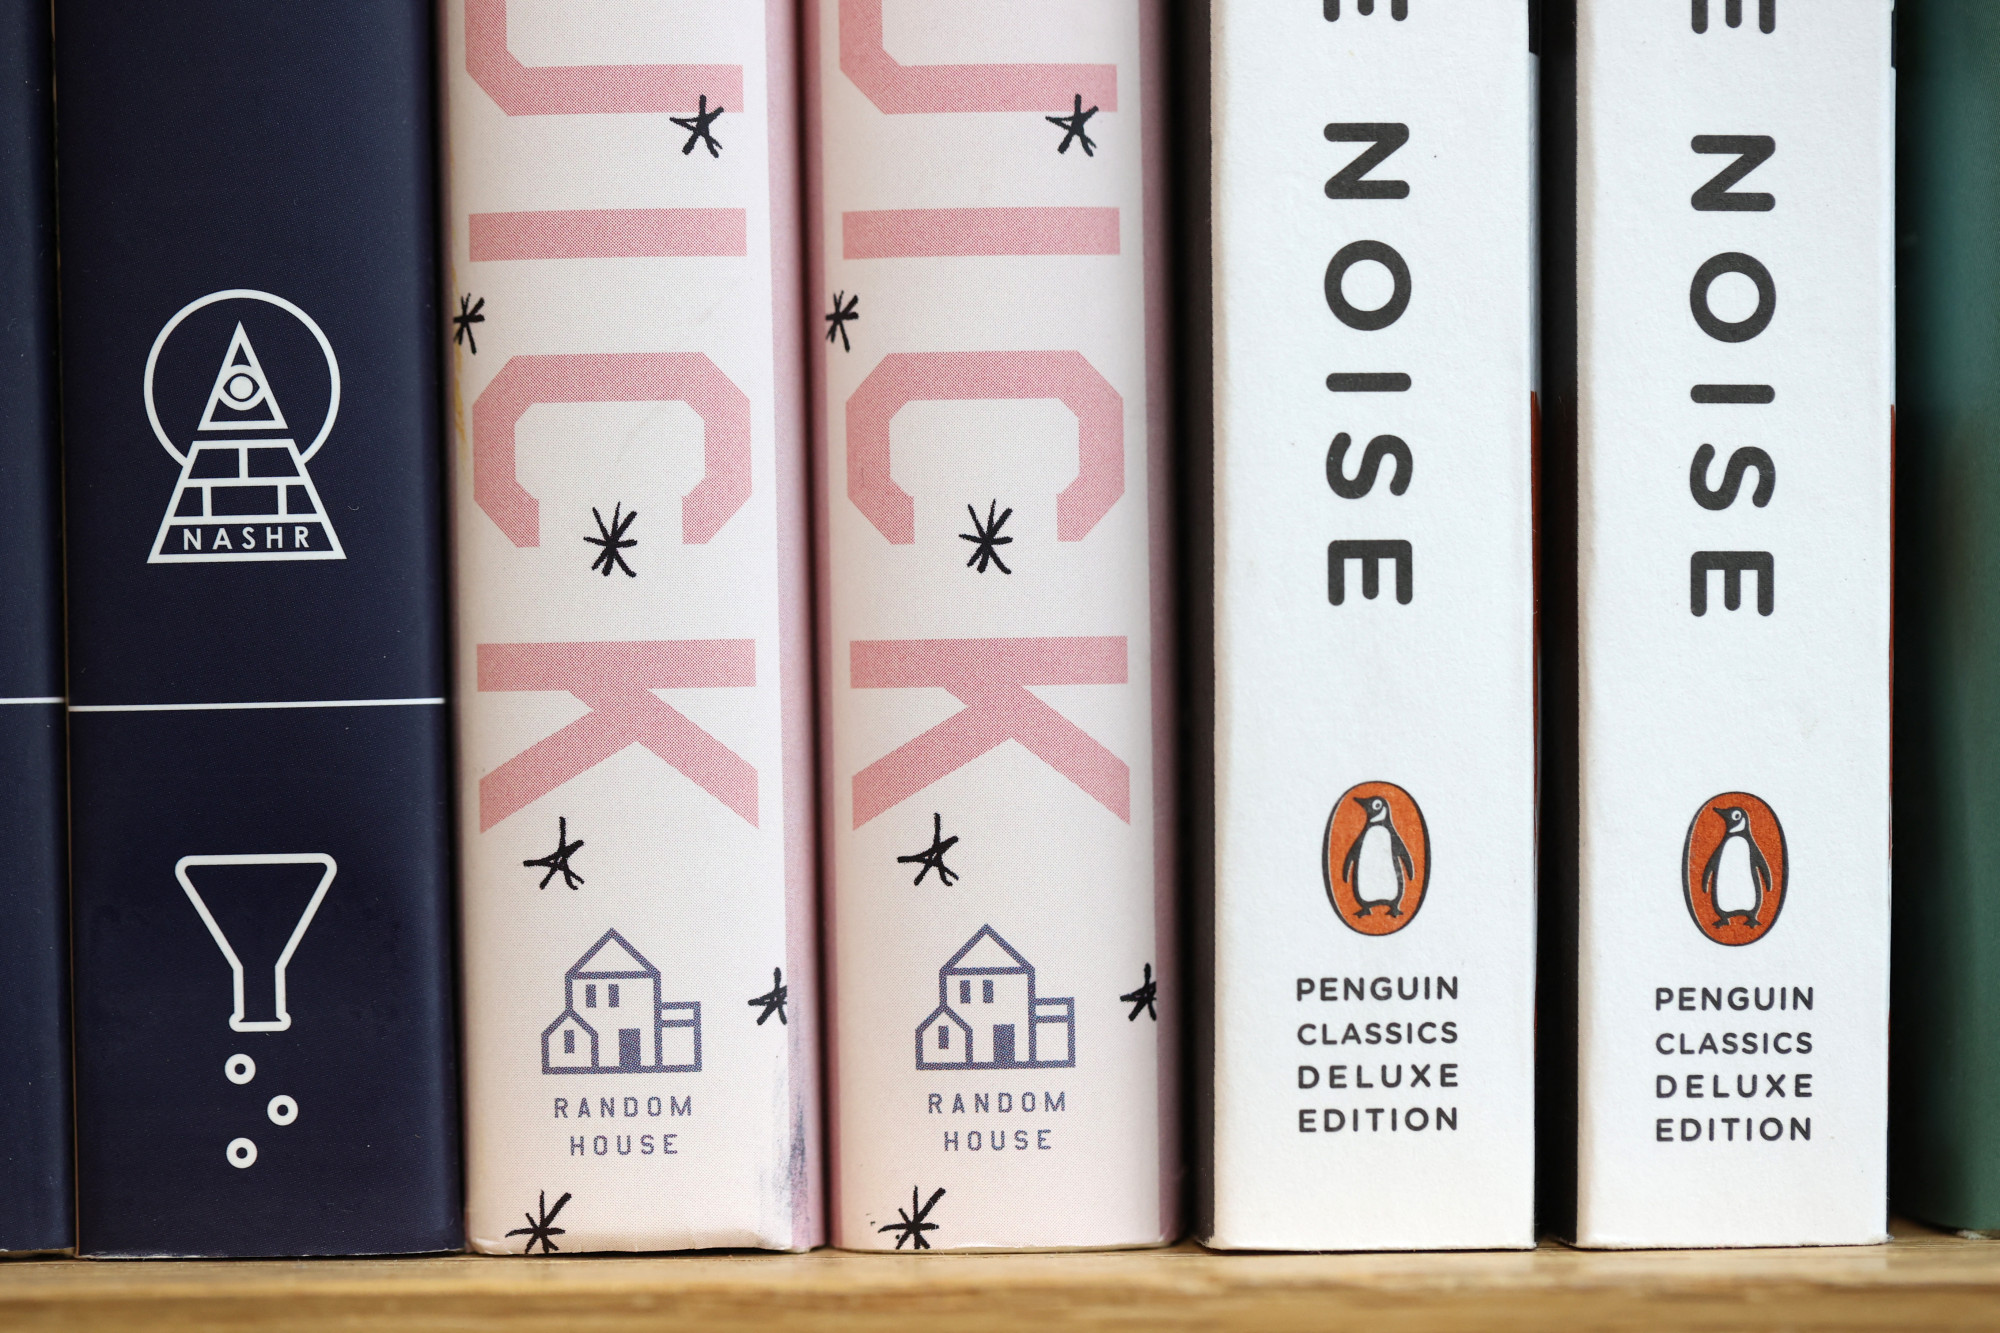 Nem jöhet létre a világ első megakiadója, egy bíró megvétózta, hogy a Penguin felvásárolhassa a Simon & Schustert